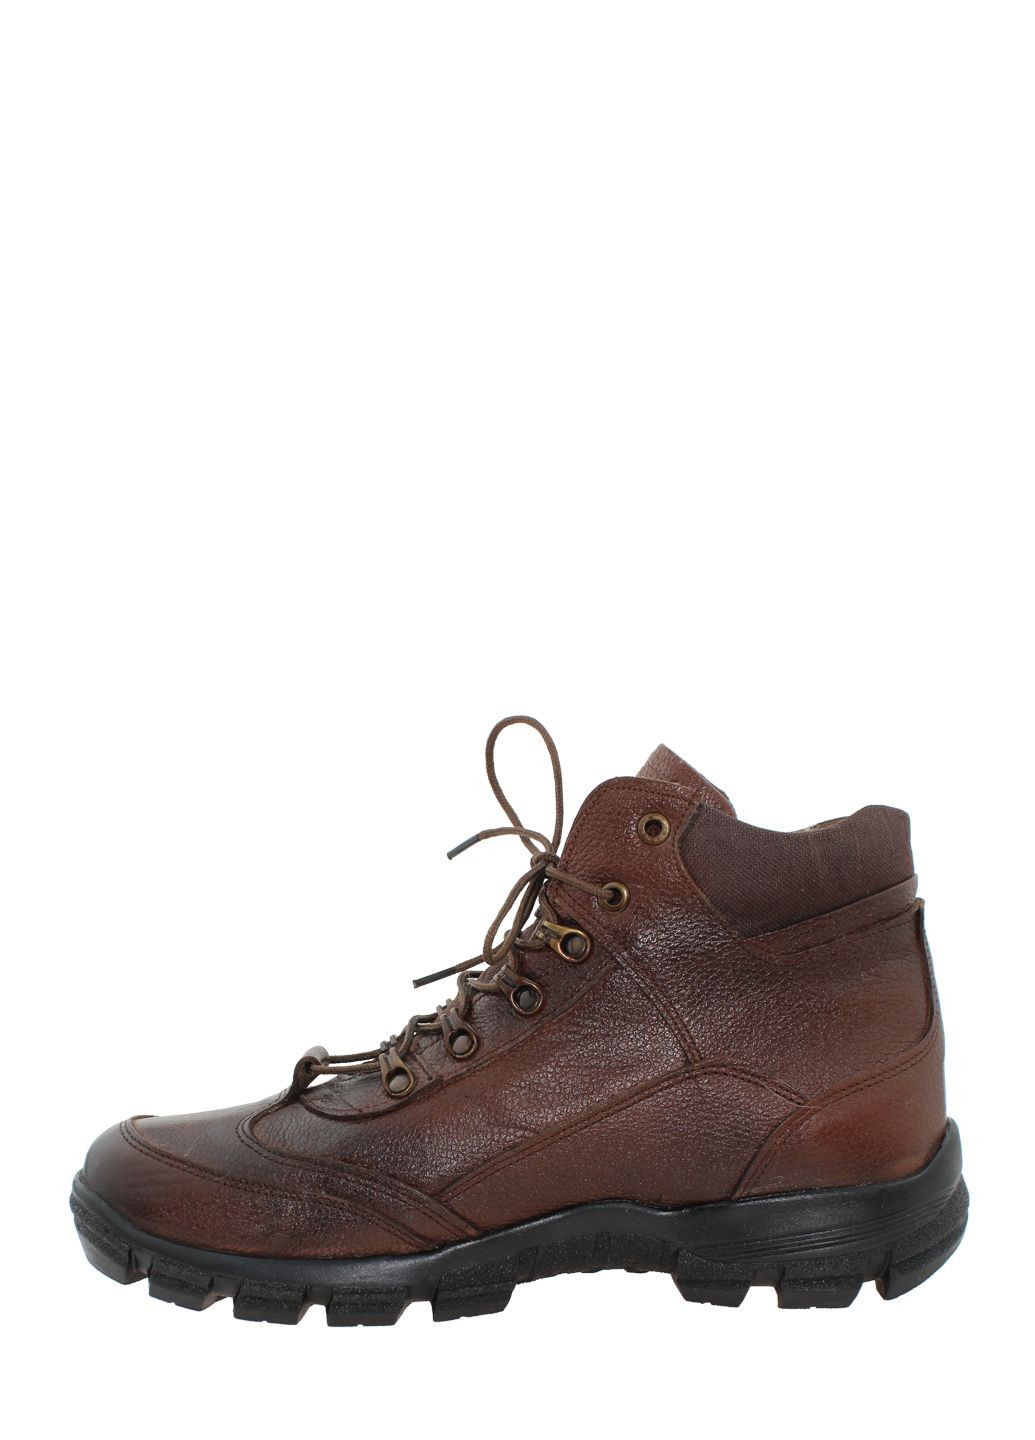 Коричневые осенние ботинки 1012.04 коричневый Goover